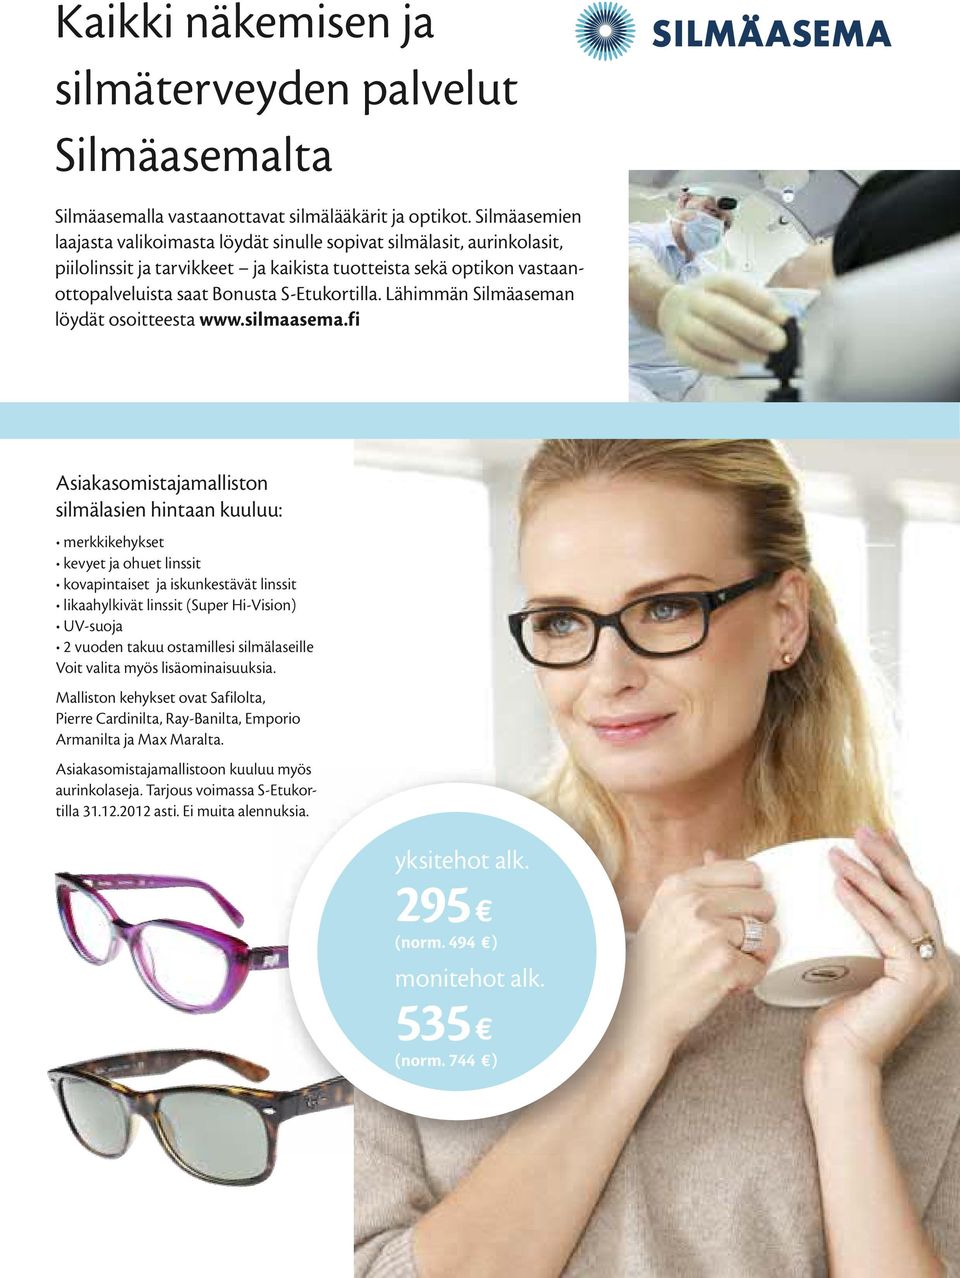 Bonusta S-Etukortilla. Lähimmän Silmäaseman löydät osoitteesta www.silmaasema.fi Asiakasomistajamalliston silmälasien hintaan kuuluu: Voit valita myös lisäominaisuuksia.